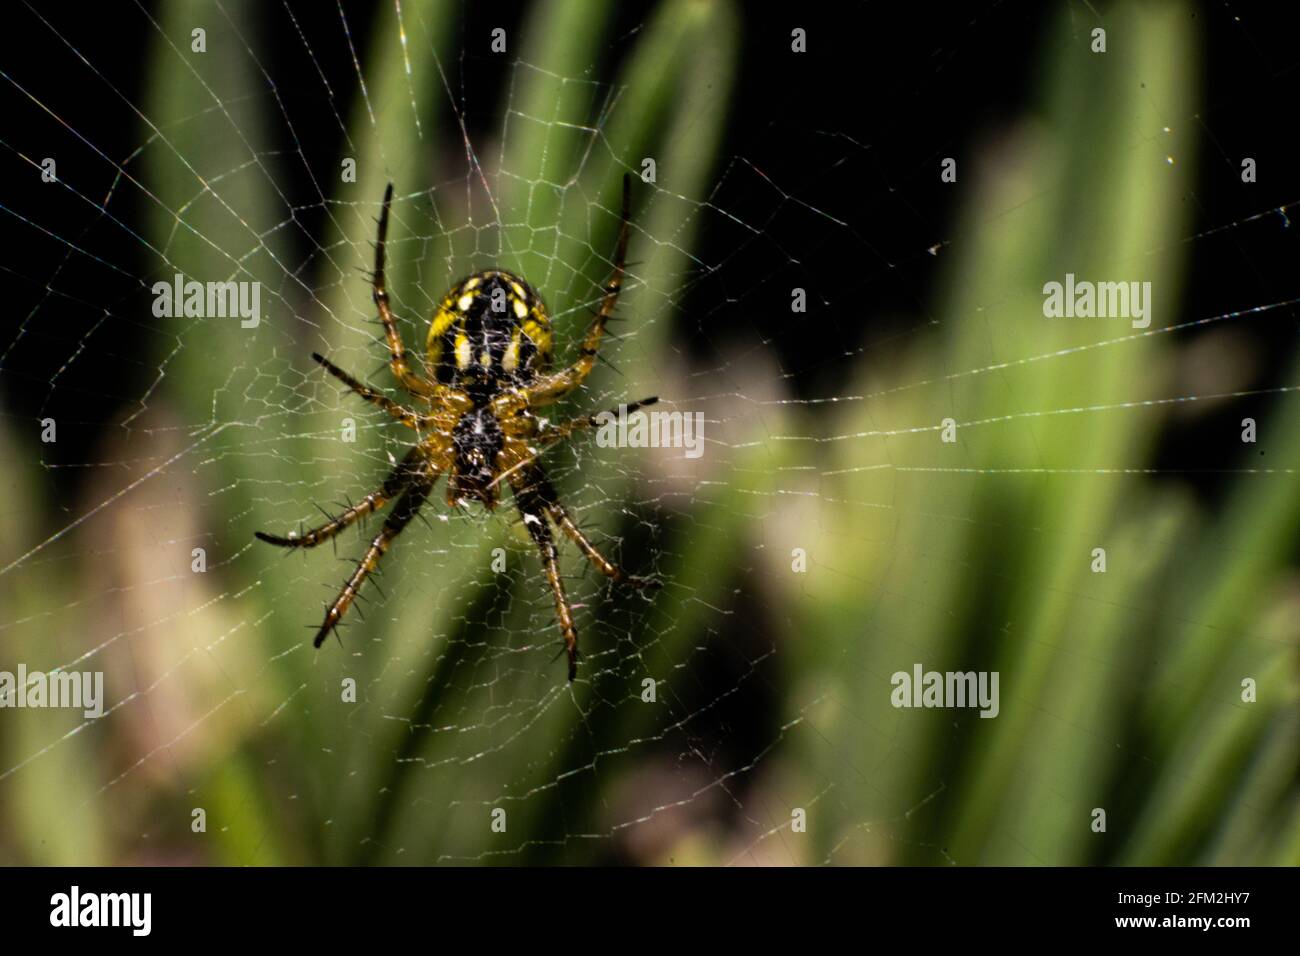 Neriene peltata spider found in Europe Stock Photo